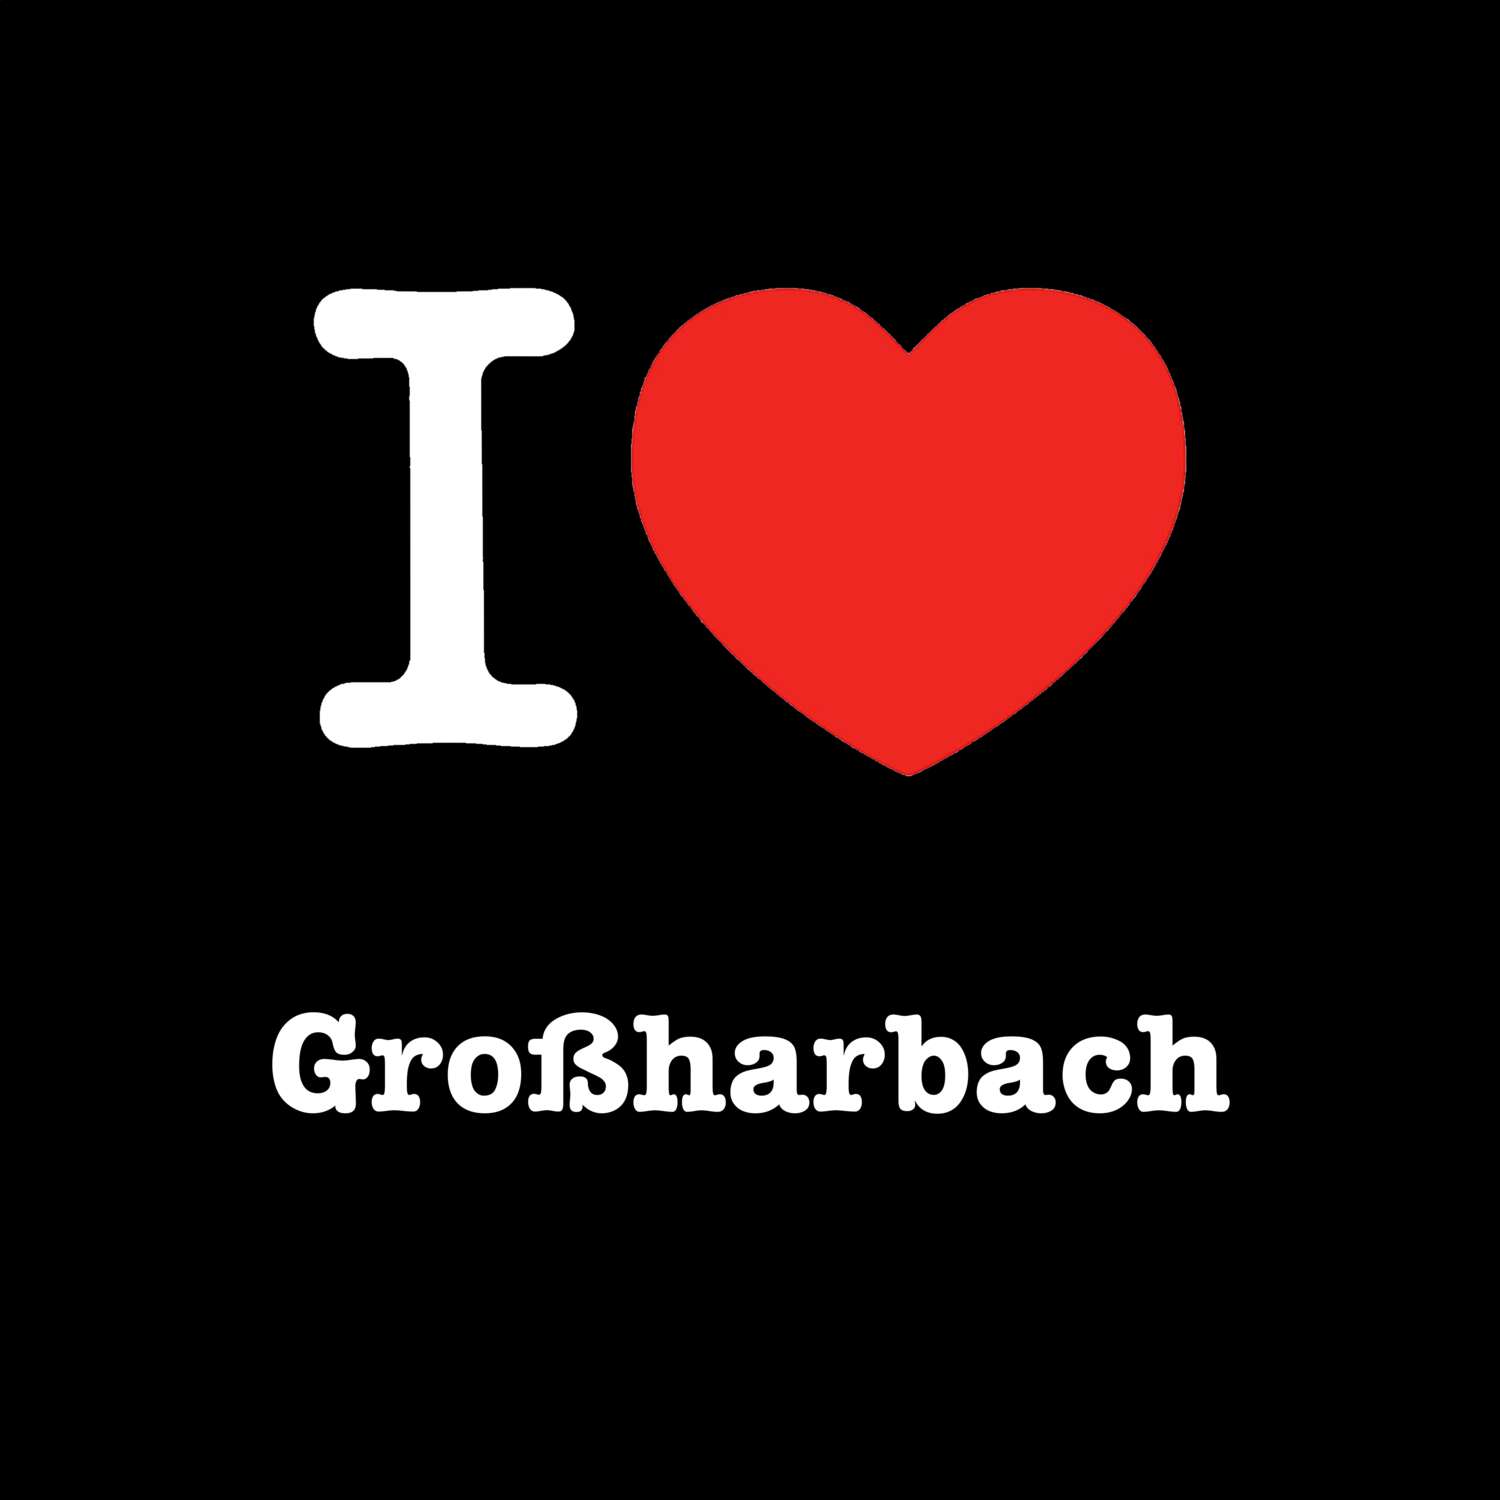 Großharbach T-Shirt »I love«